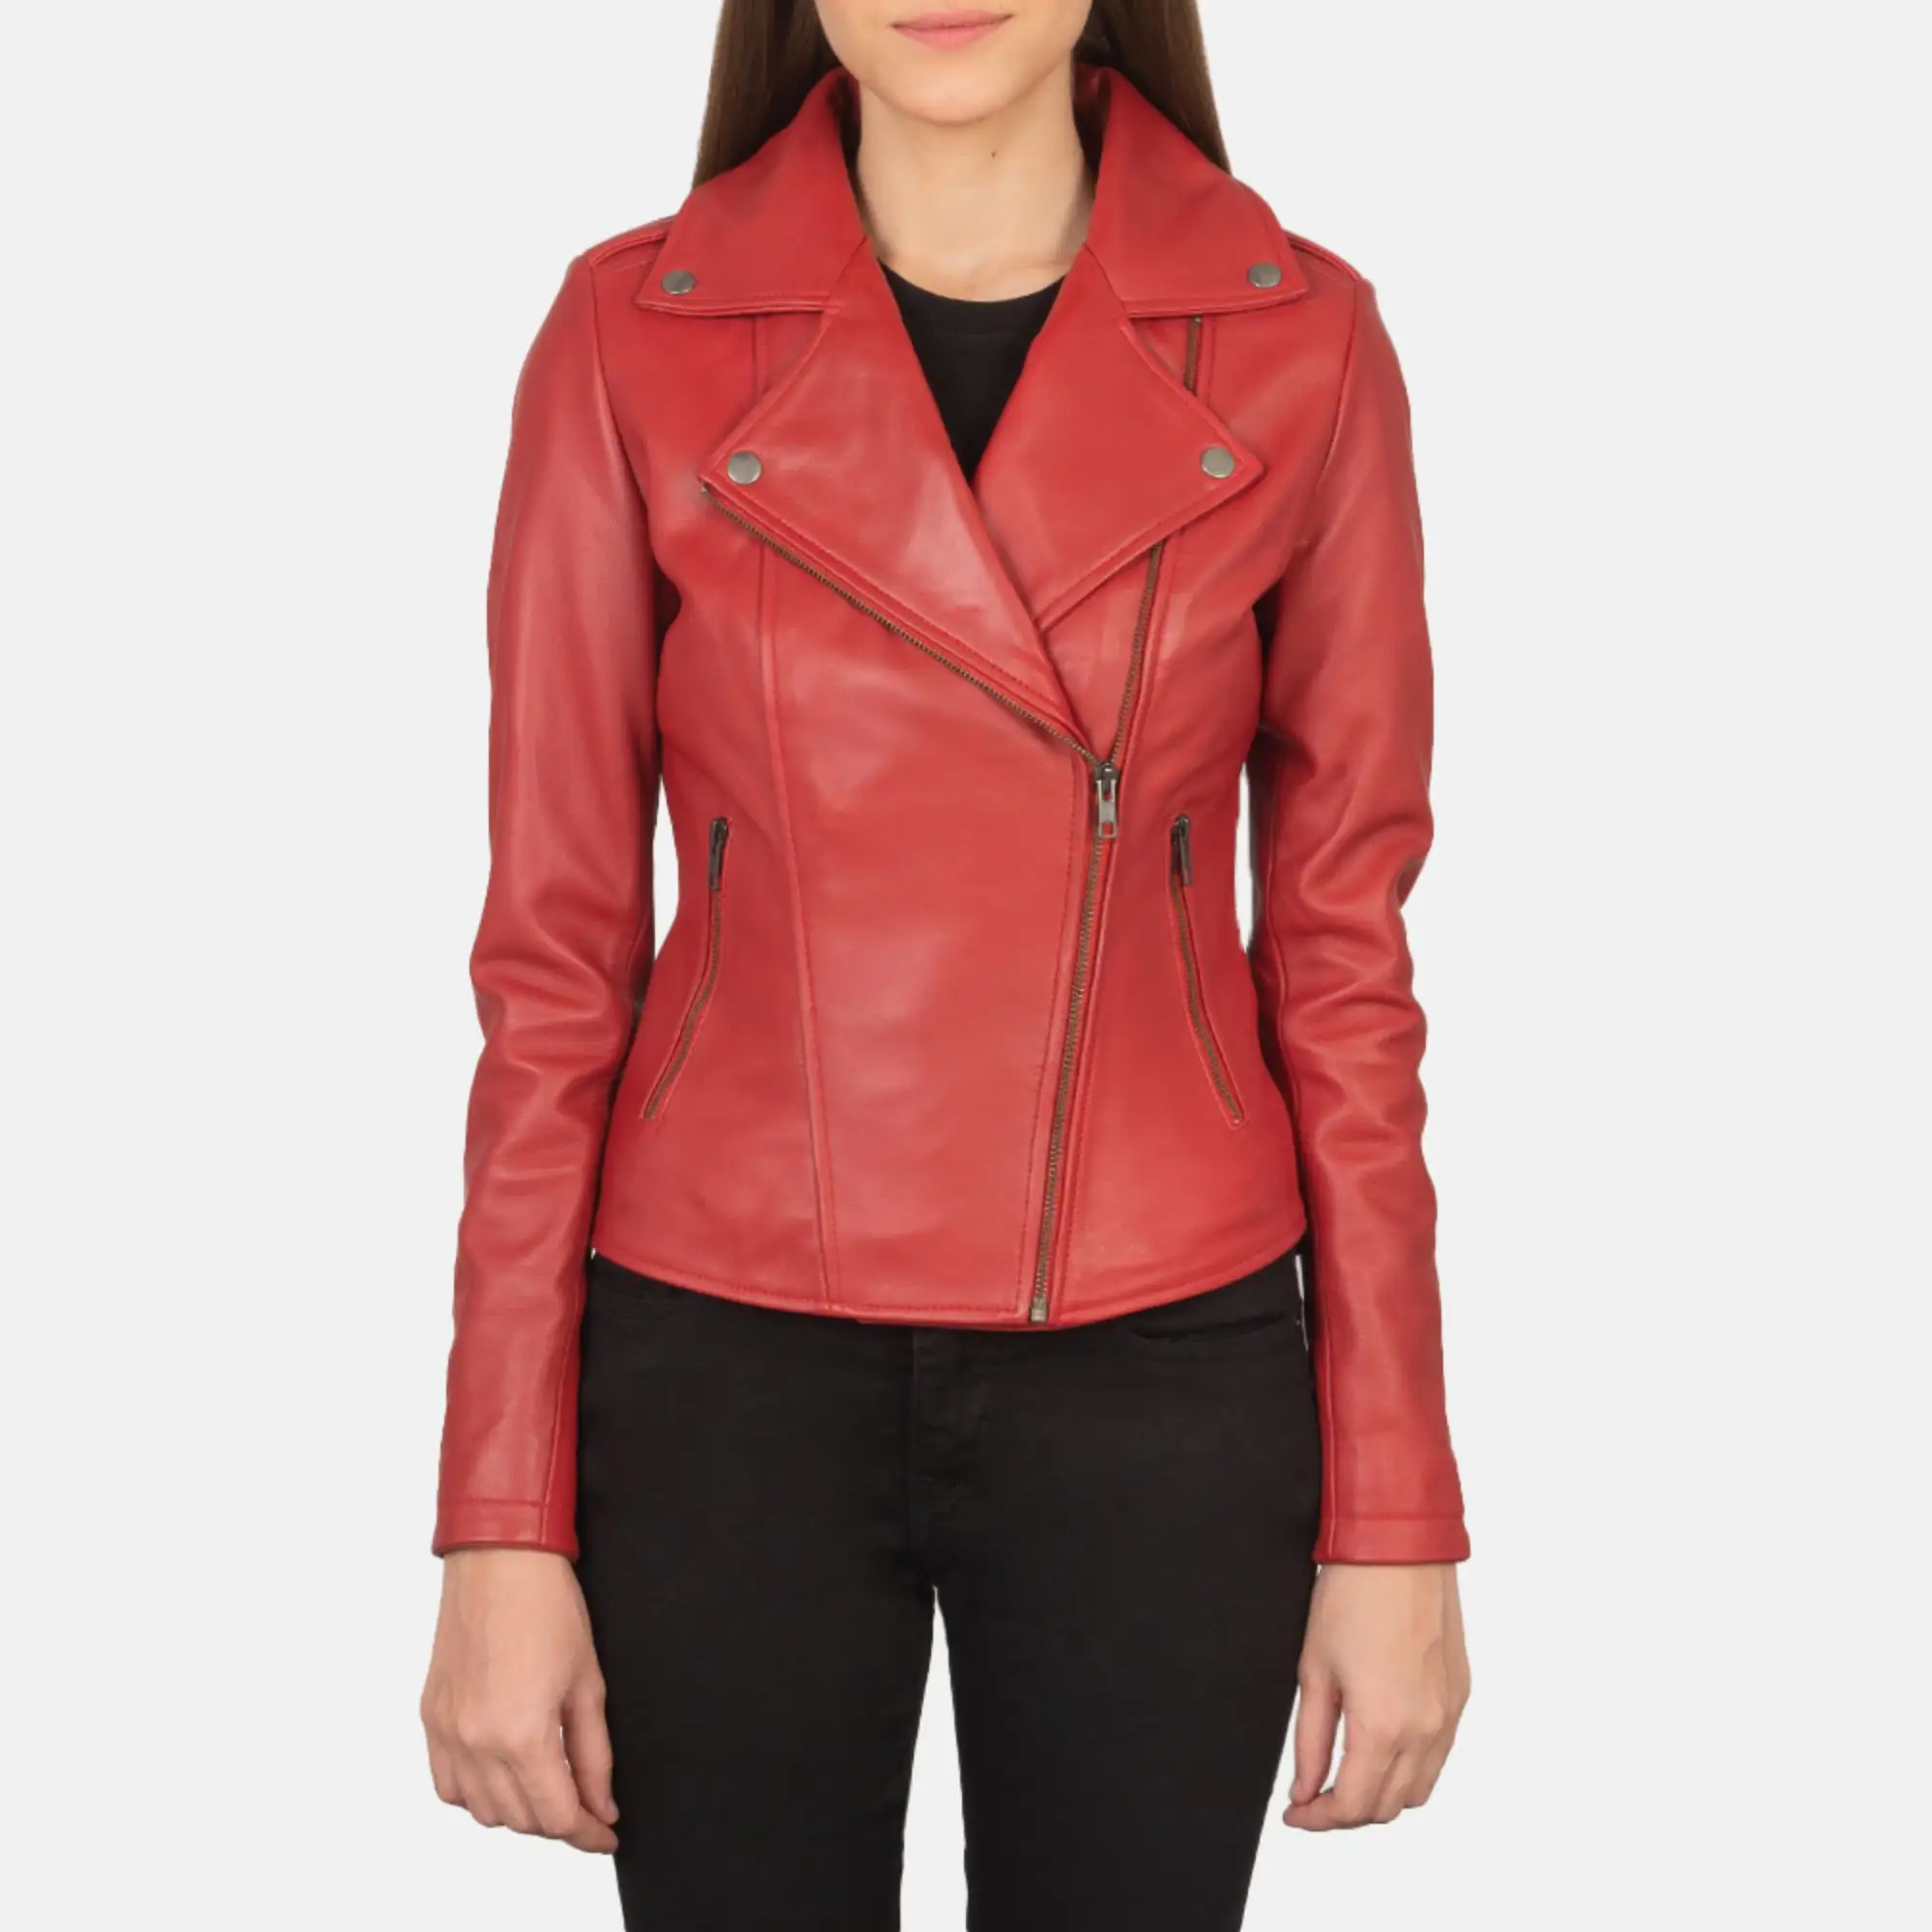 असली लेदर चर्मपत्र एनिलिन जिपर फ़्लैश बैक लाल महिलाओं बाइकर जैकेट रजाई बना हुआ विस्कोस अस्तर और बाहर के अंदर के साथ जेब